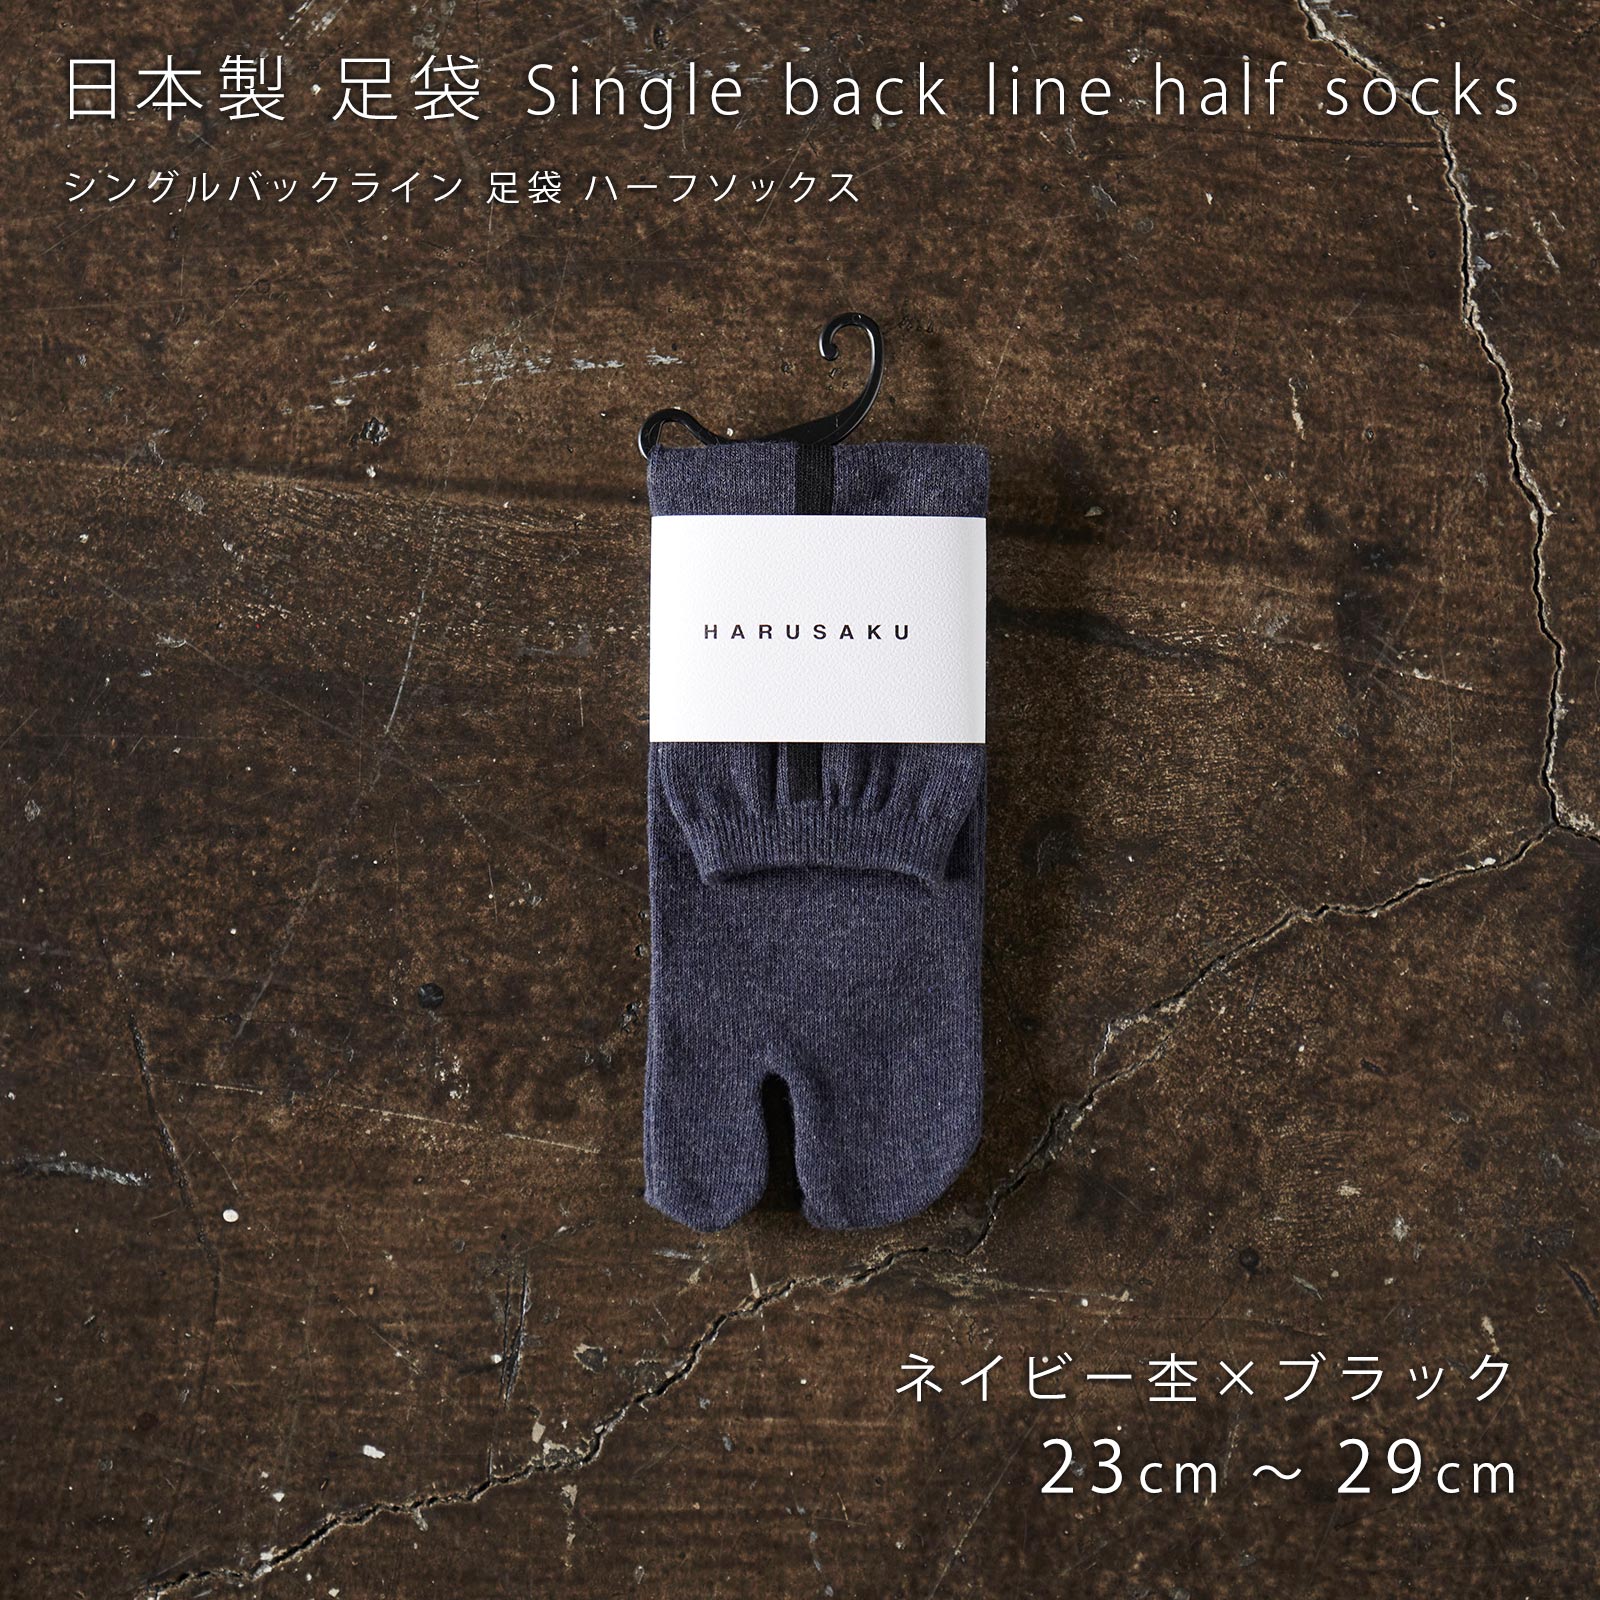 メンズ靴下専門ブランド HARUSAKU / 【ギフト袋付き】【ご注文者様にお届け】 日本製 足袋 Single back line half  socks 3P set（276